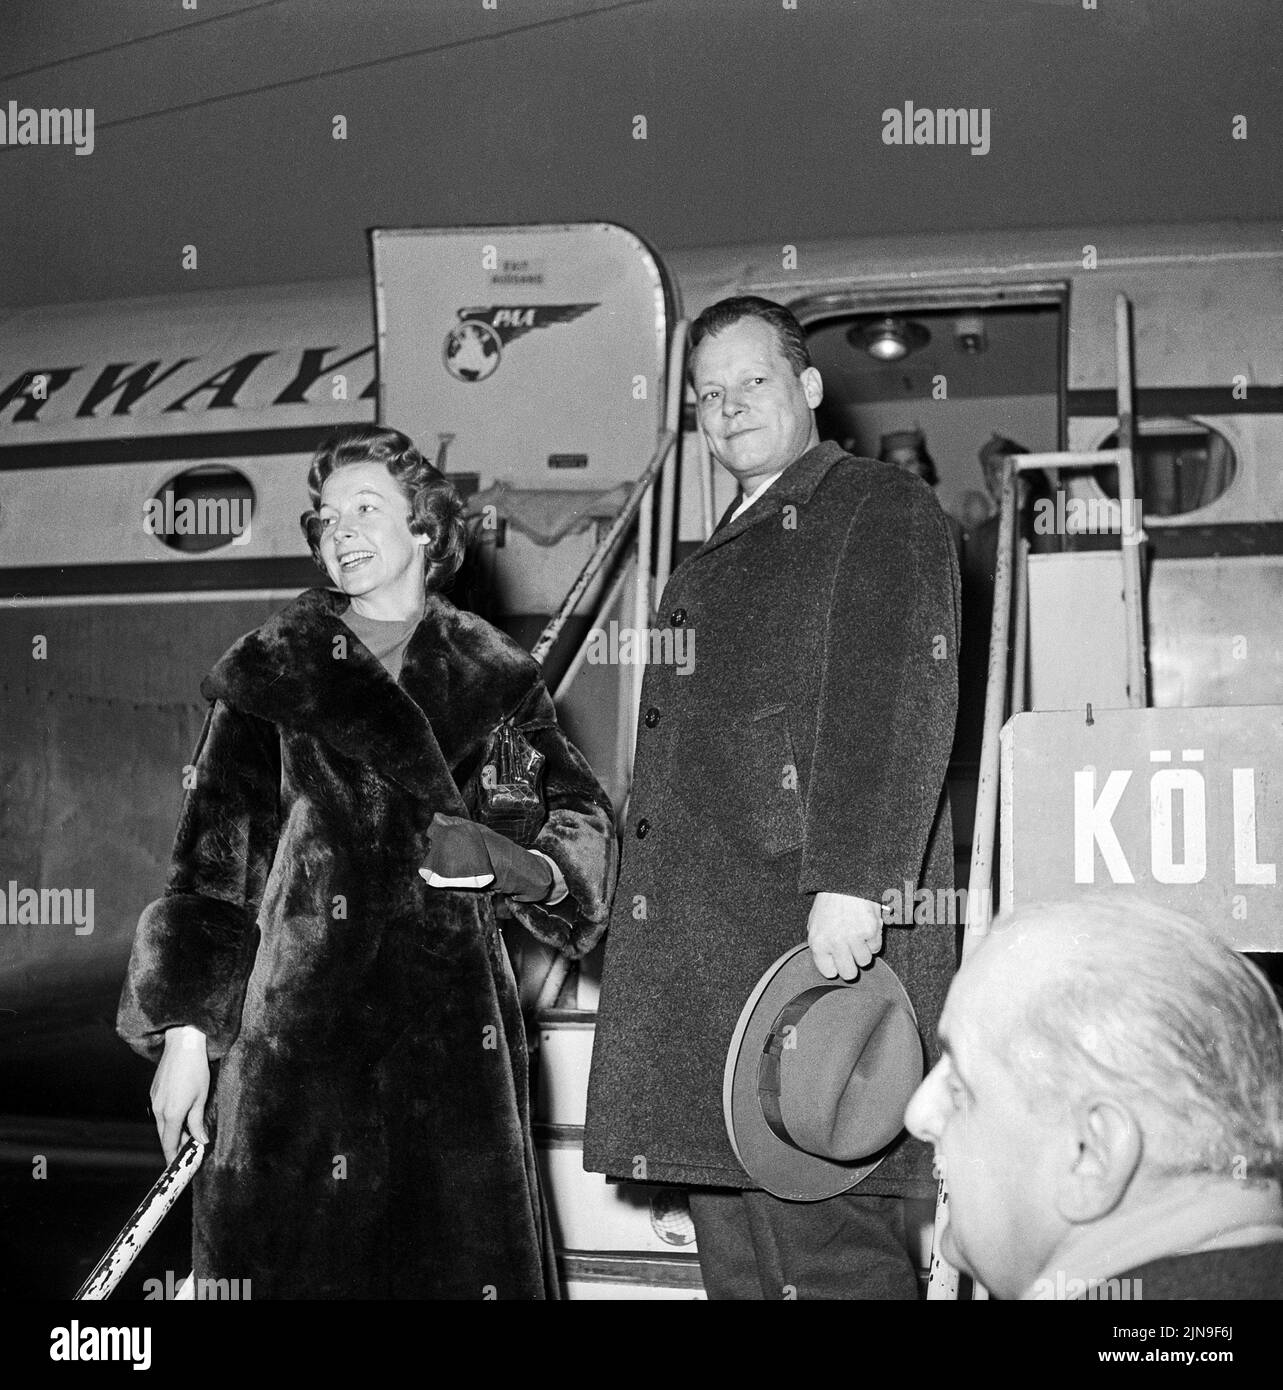 Original-Bildunterschrift: Gingen auf die große Reise - Der Regierende Bürgermeister Willy Brandt und seine Gattin Rut beim Abschied auf dem Flughafen Tempelhof, Berlin, Deutschland 1959 Stock Photo